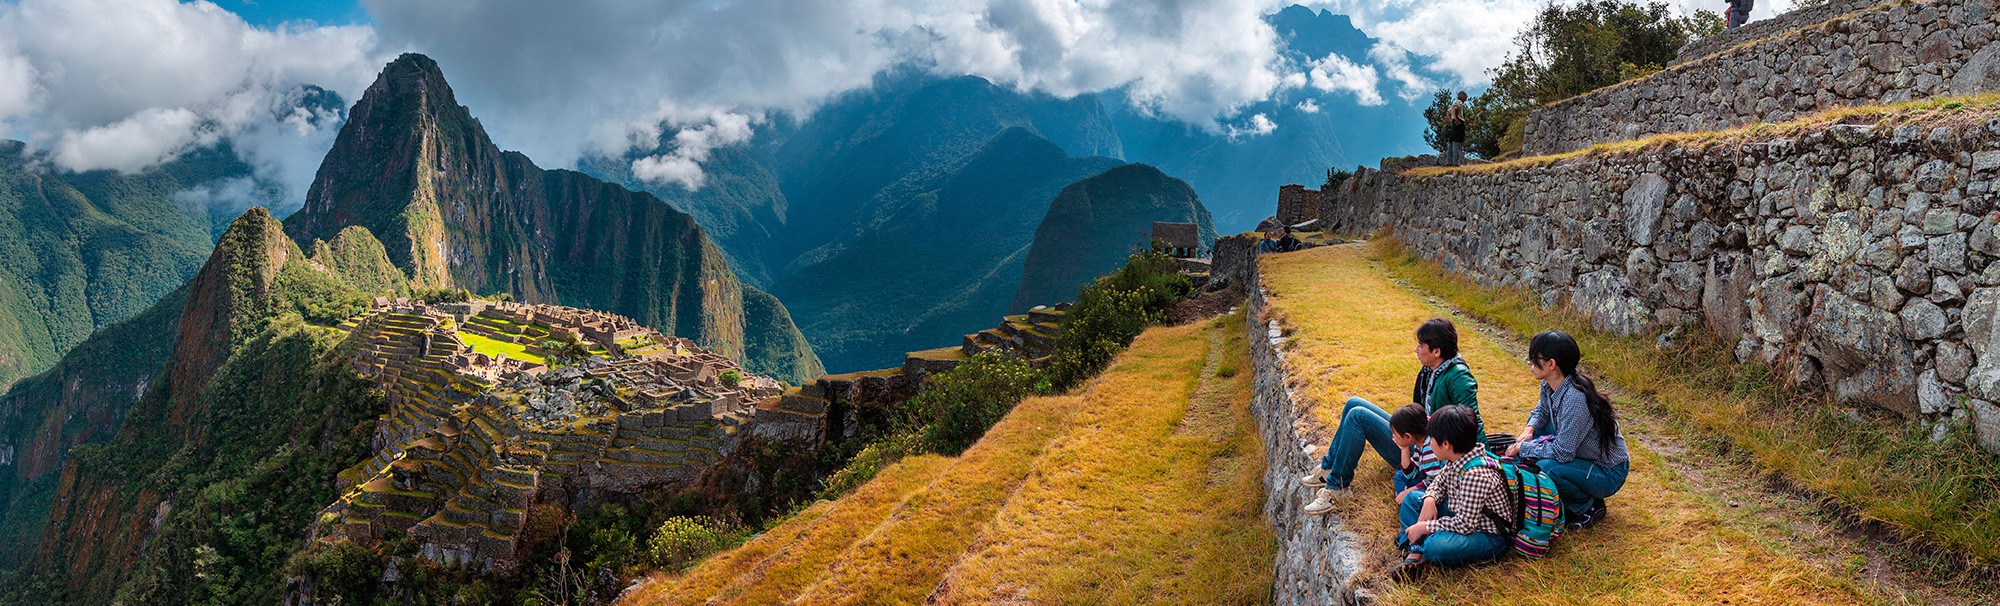 Machu Picchu Peru Viagens